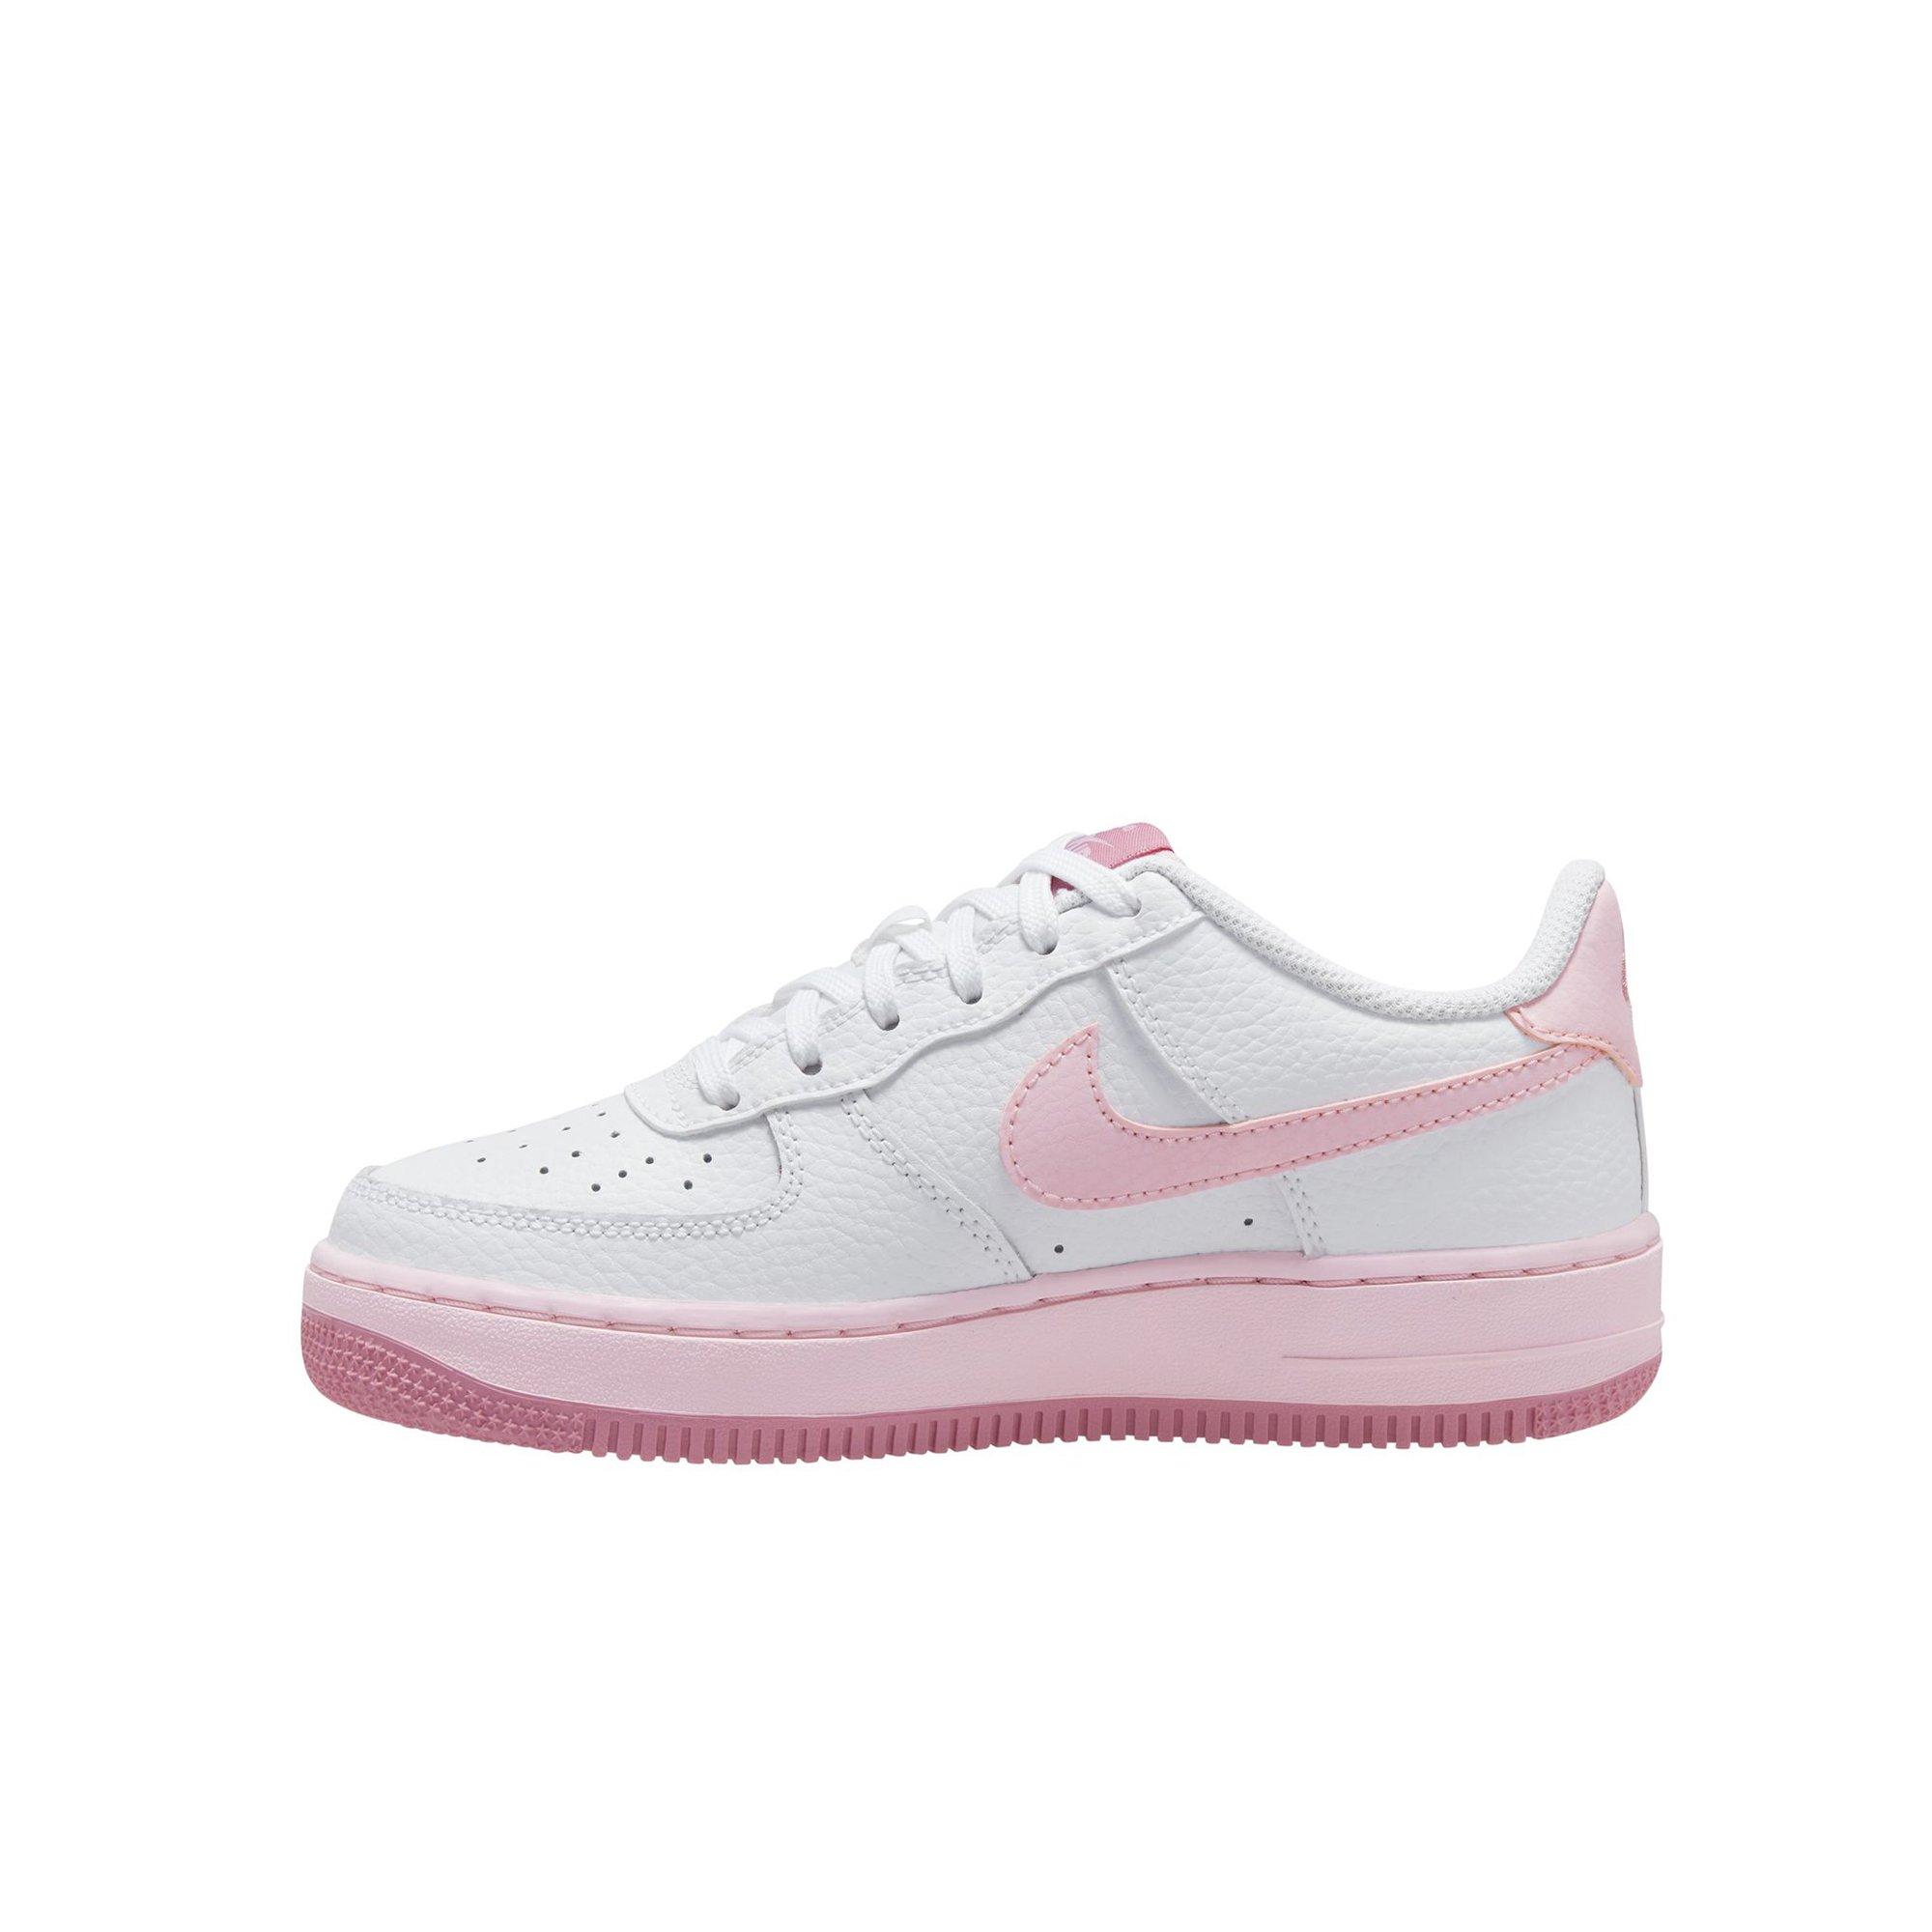 Moedig herfst ondergoed Nike Air Force 1 "White/Pink Foam/Elemental Pink" Grade School Girls' Shoe